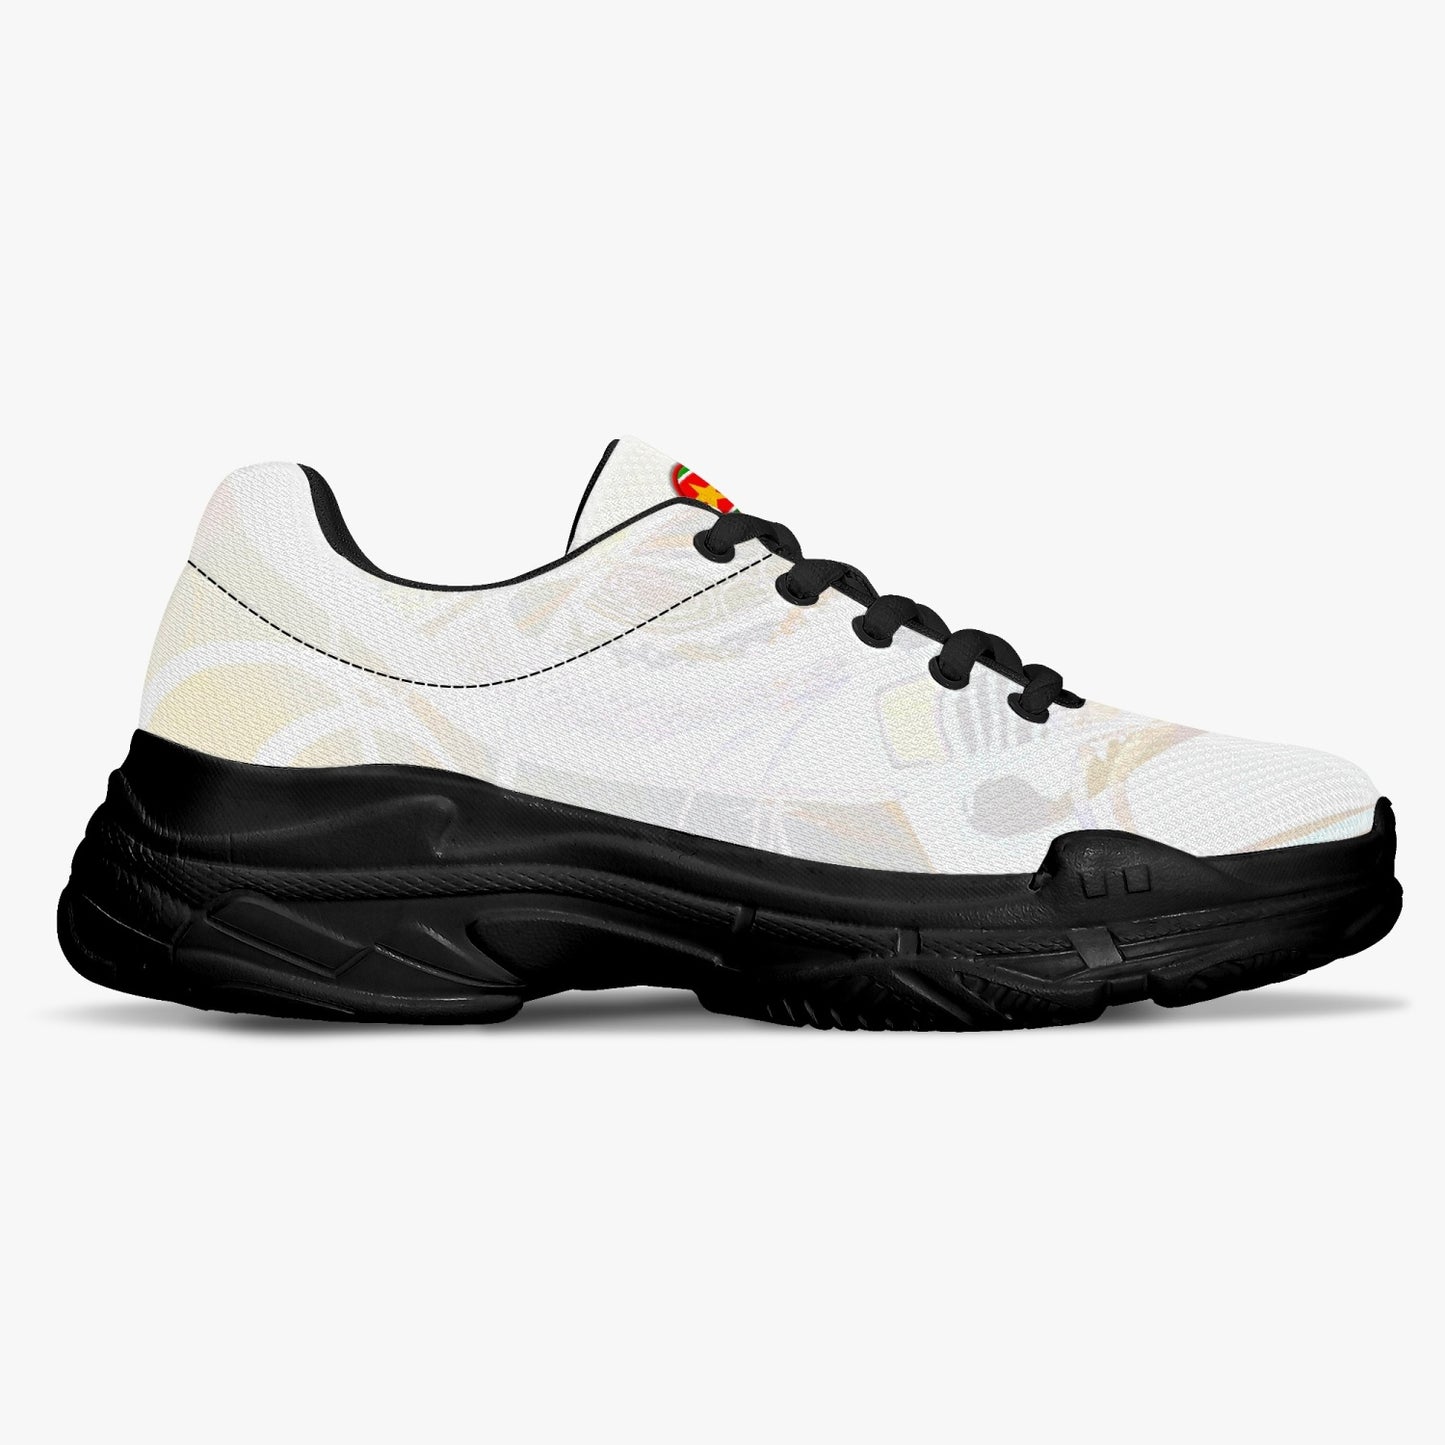 Sneakers "crema" unisex (BALNC / NERO)